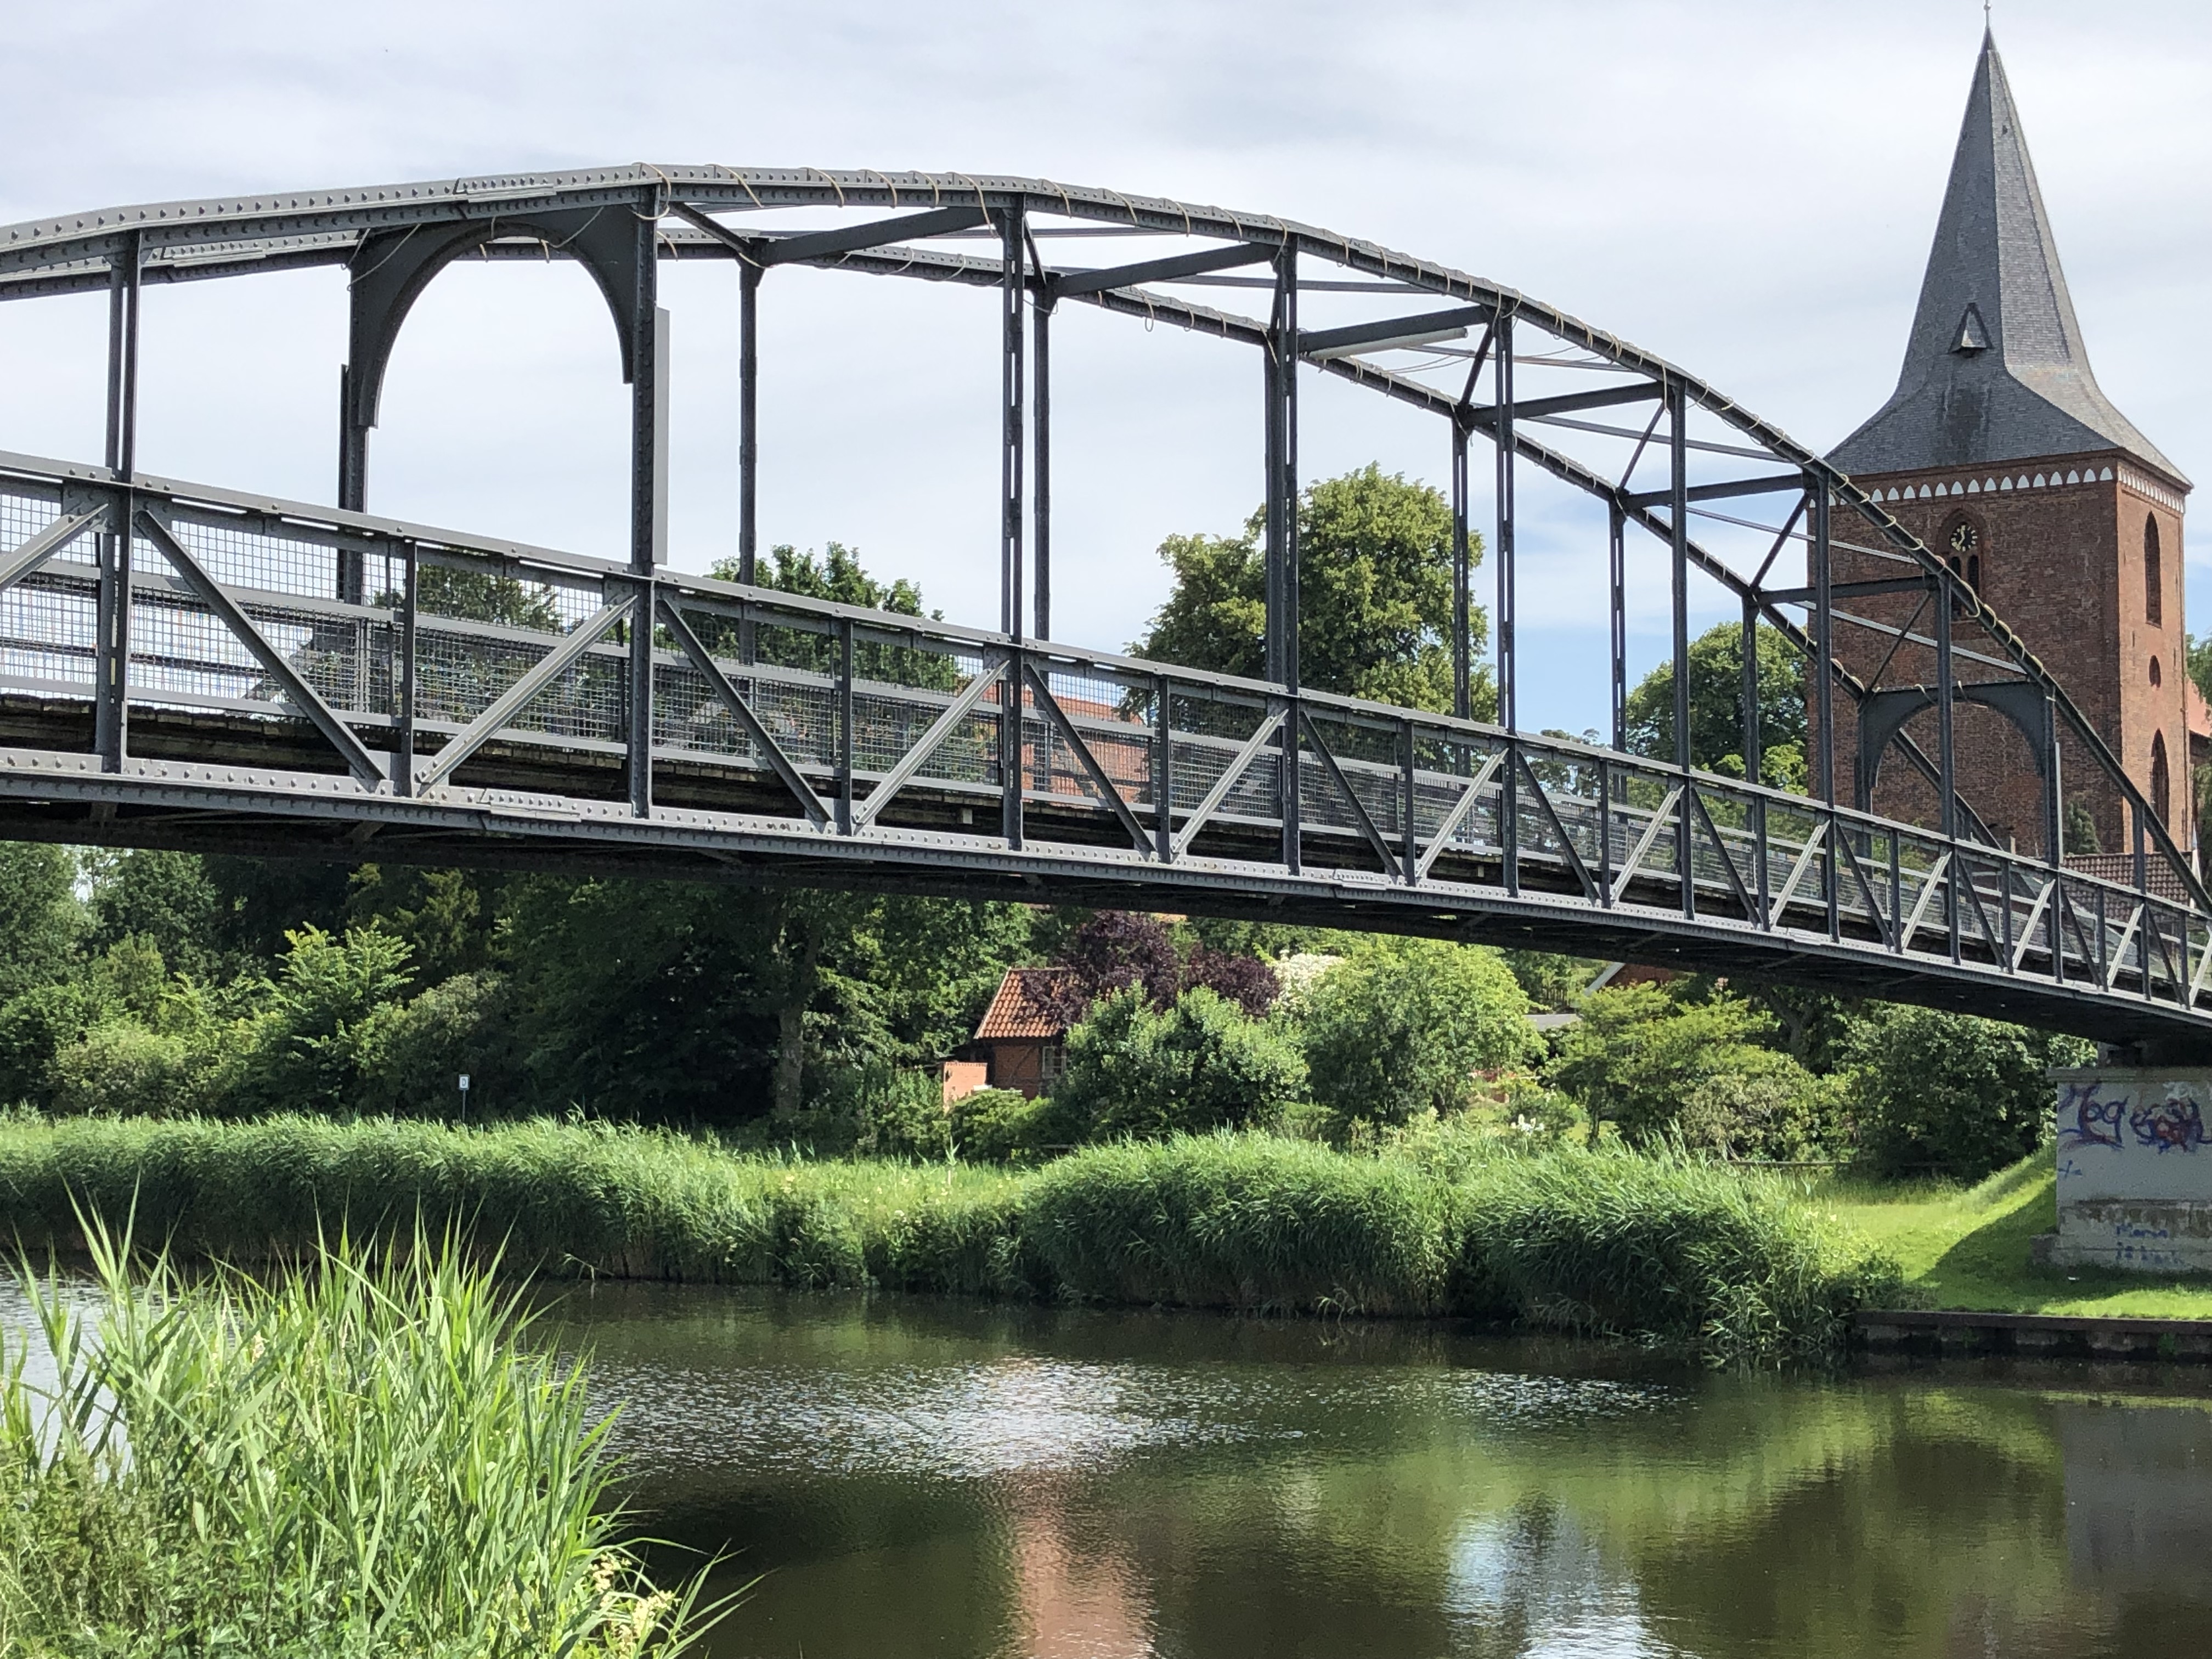 Kirchsteigbrücke In Berkenthin Jetzt Eingetragenes Kulturdenkmal